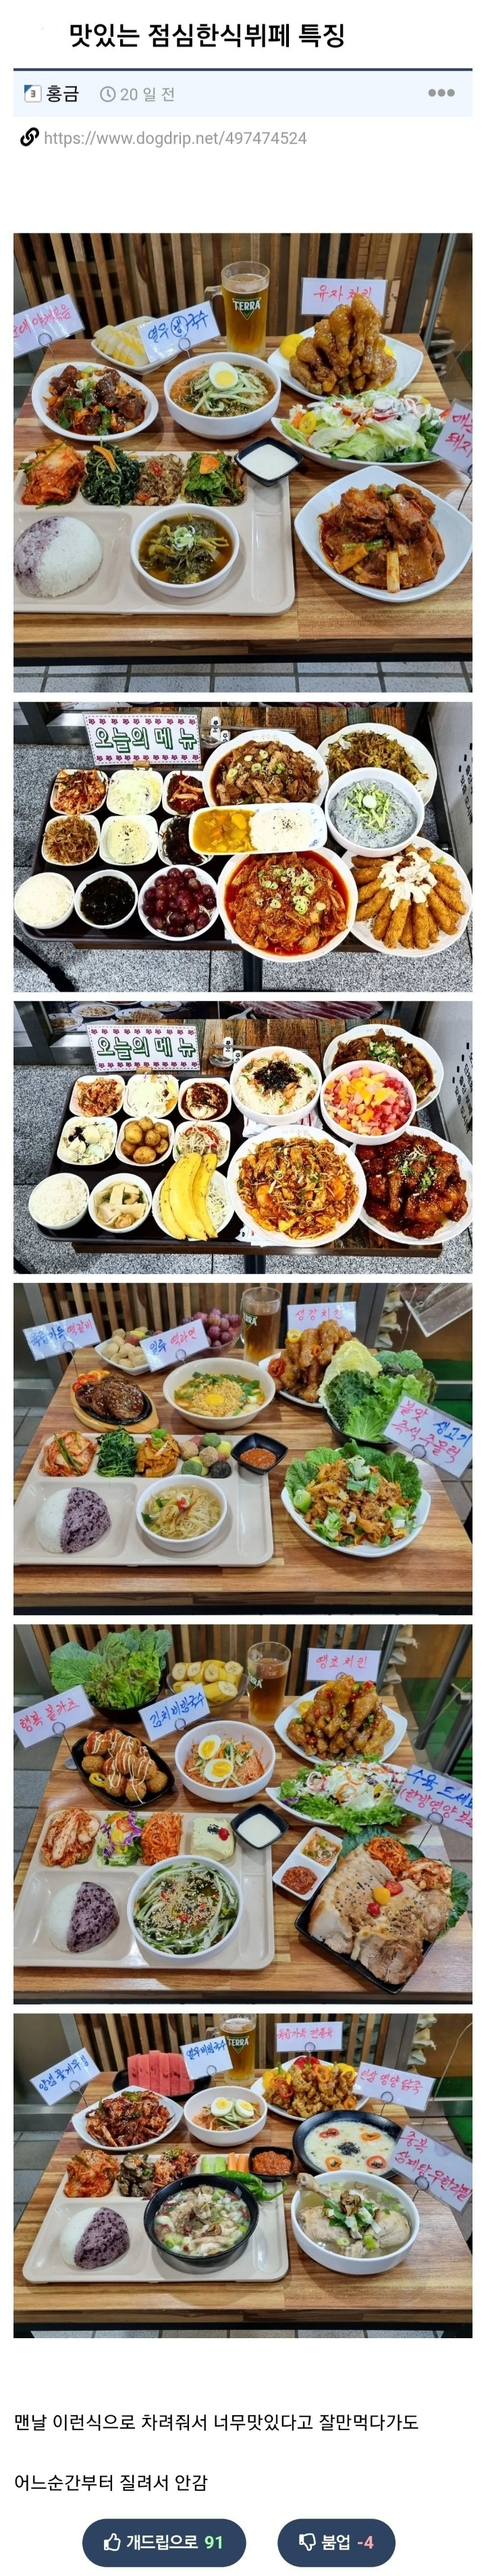 썸네일-맛있는 점심한식뷔페 특징-이미지